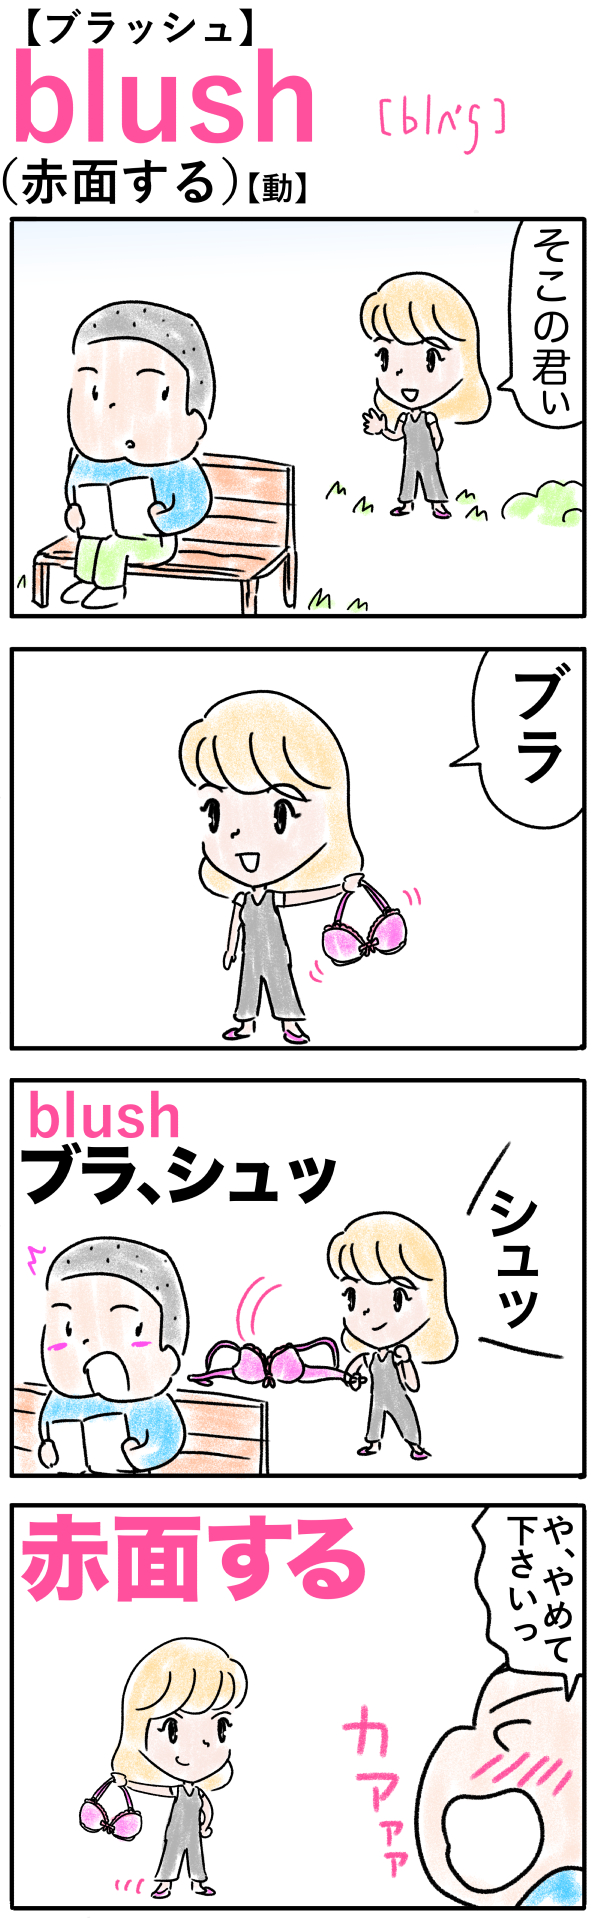 blush（赤面する）の語呂合わせ英単語